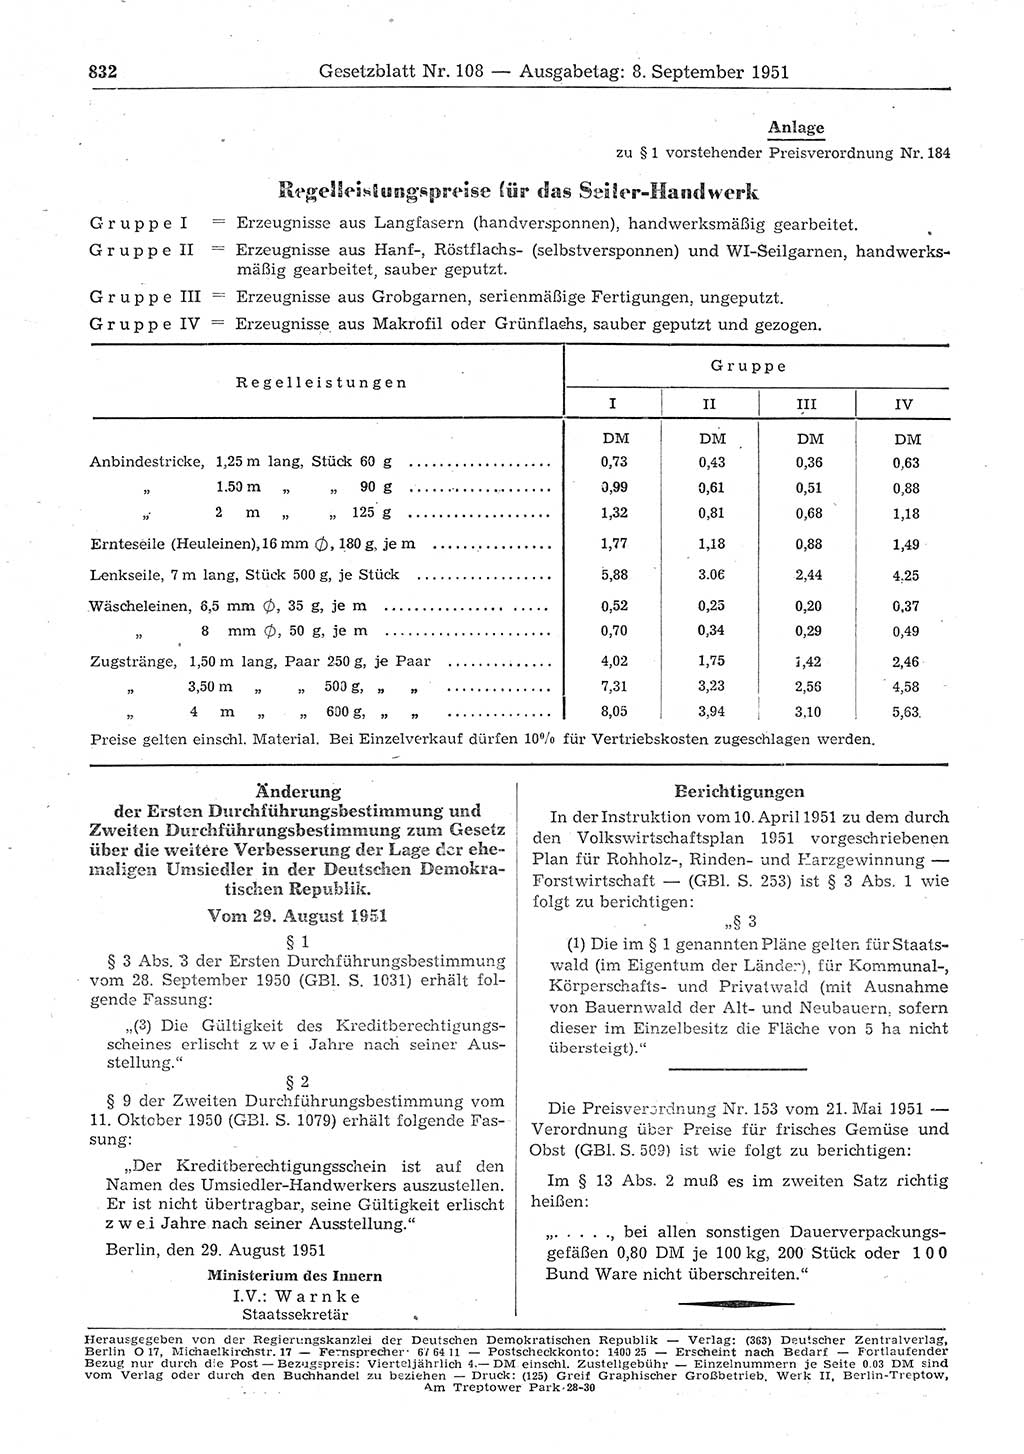 Gesetzblatt (GBl.) der Deutschen Demokratischen Republik (DDR) 1951, Seite 832 (GBl. DDR 1951, S. 832)